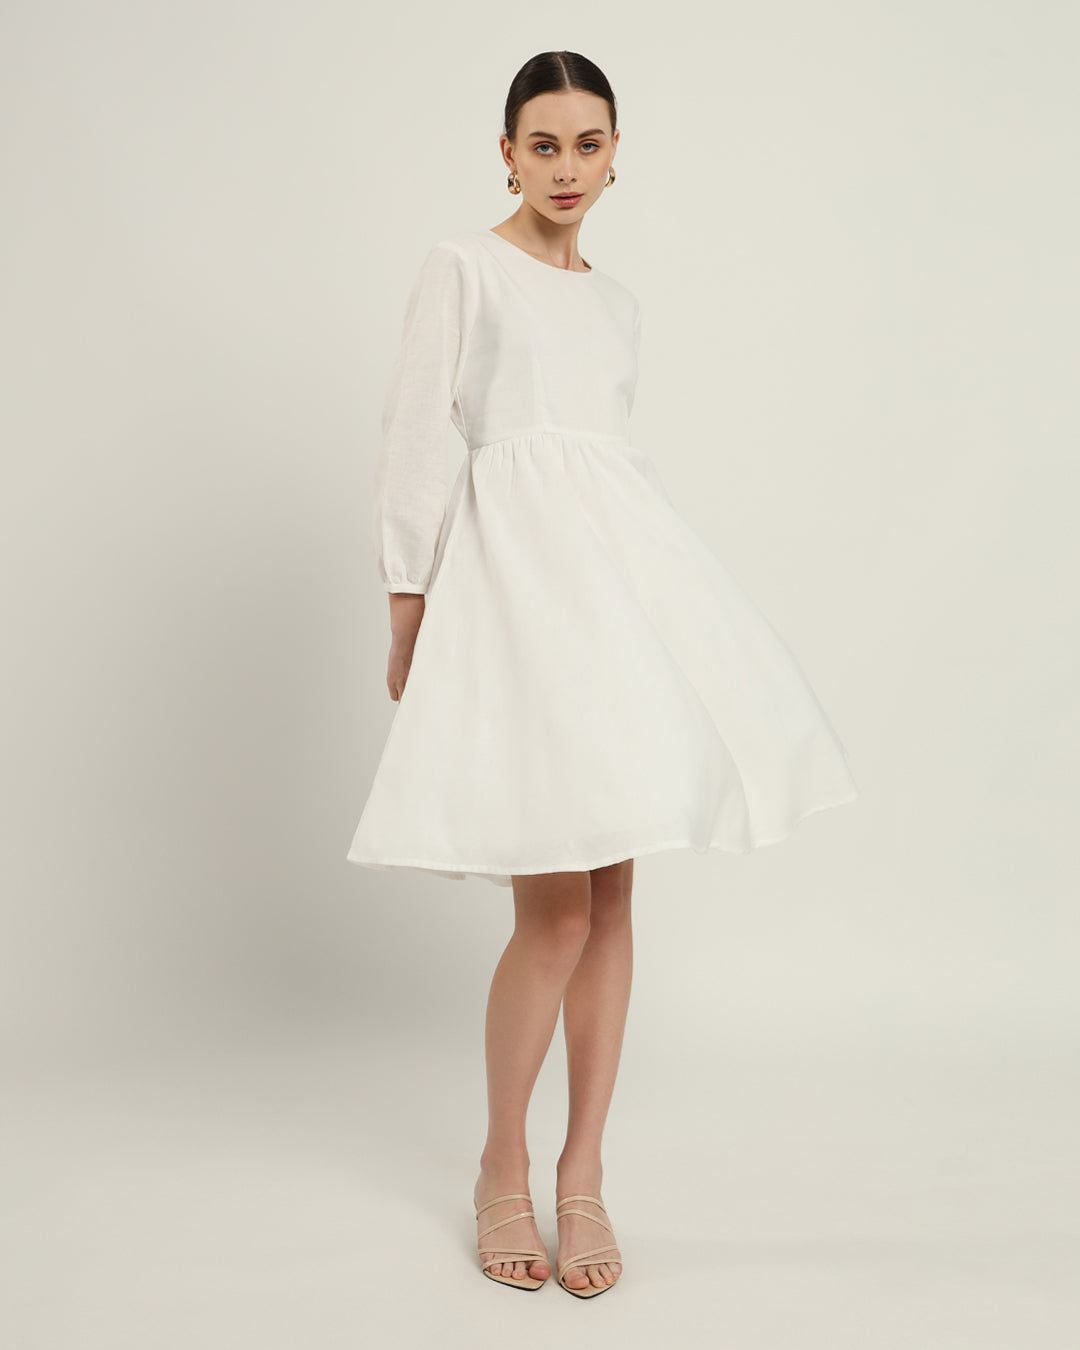 The Exeter Daisy White Linen Dress